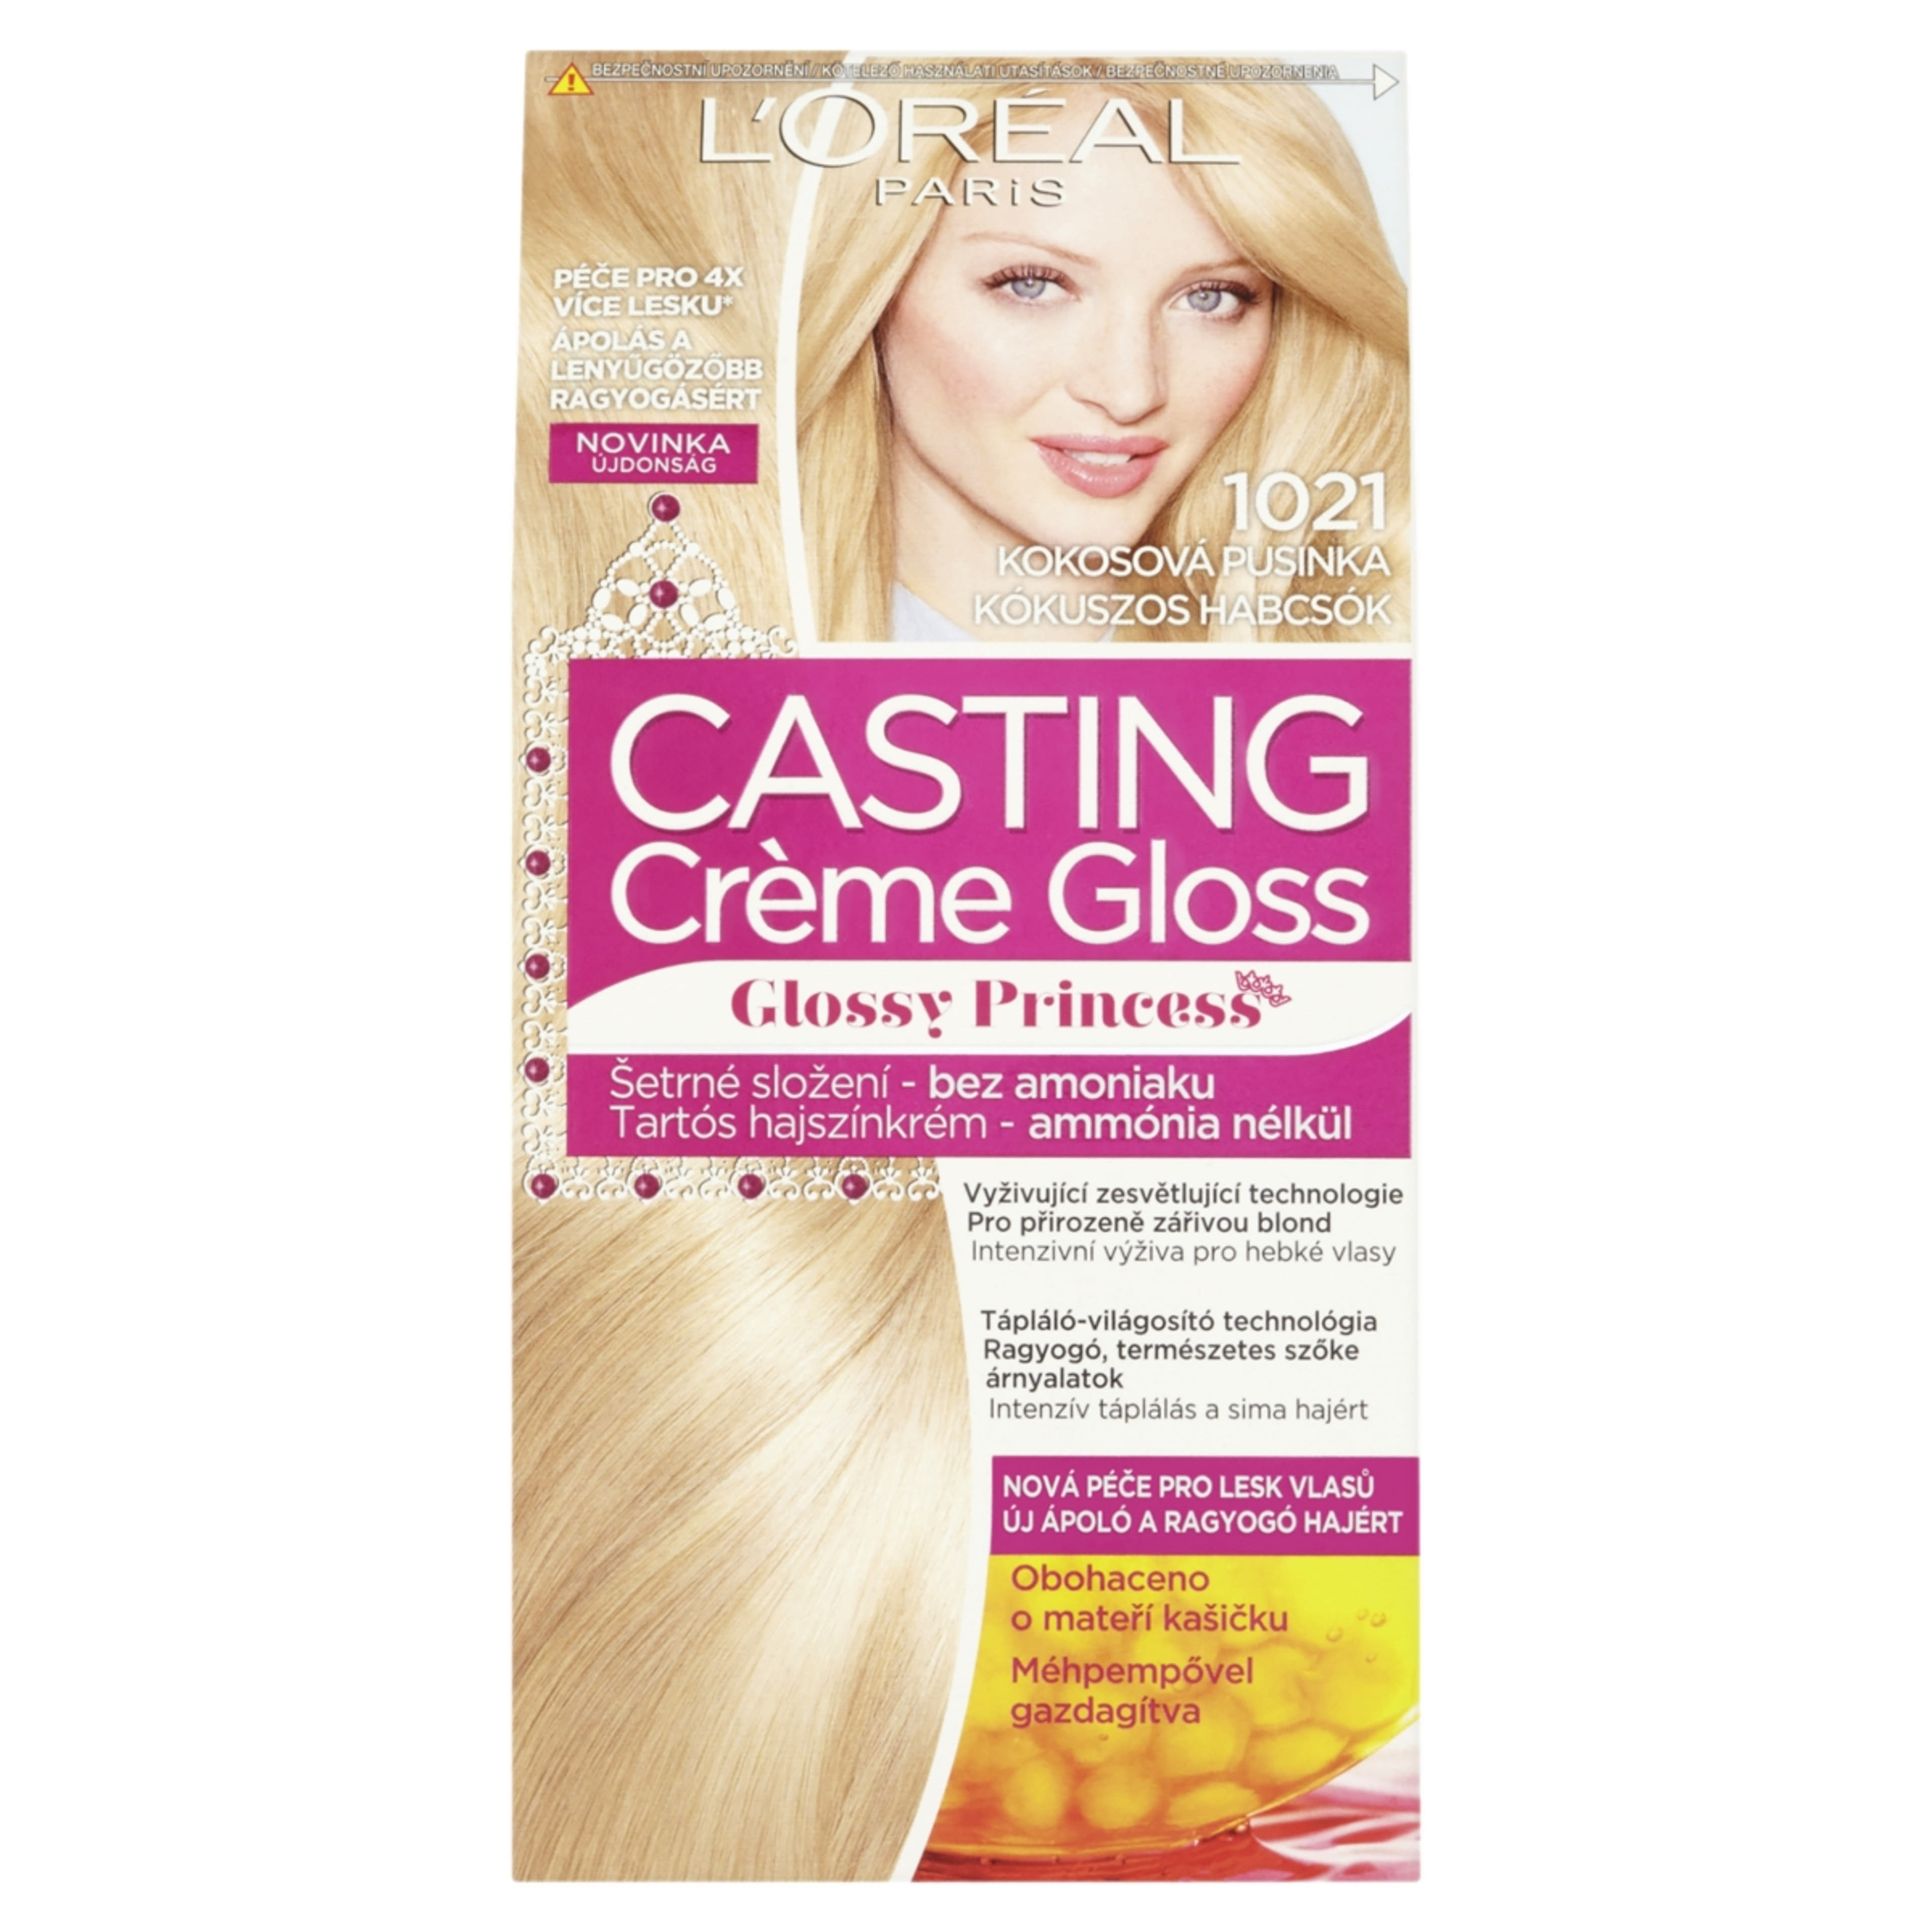 L'Oréal Paris Casting Creme Gloss Hajszínező krém 1021 Világos gyönygszőke/kókuszos habcsók - 1 db